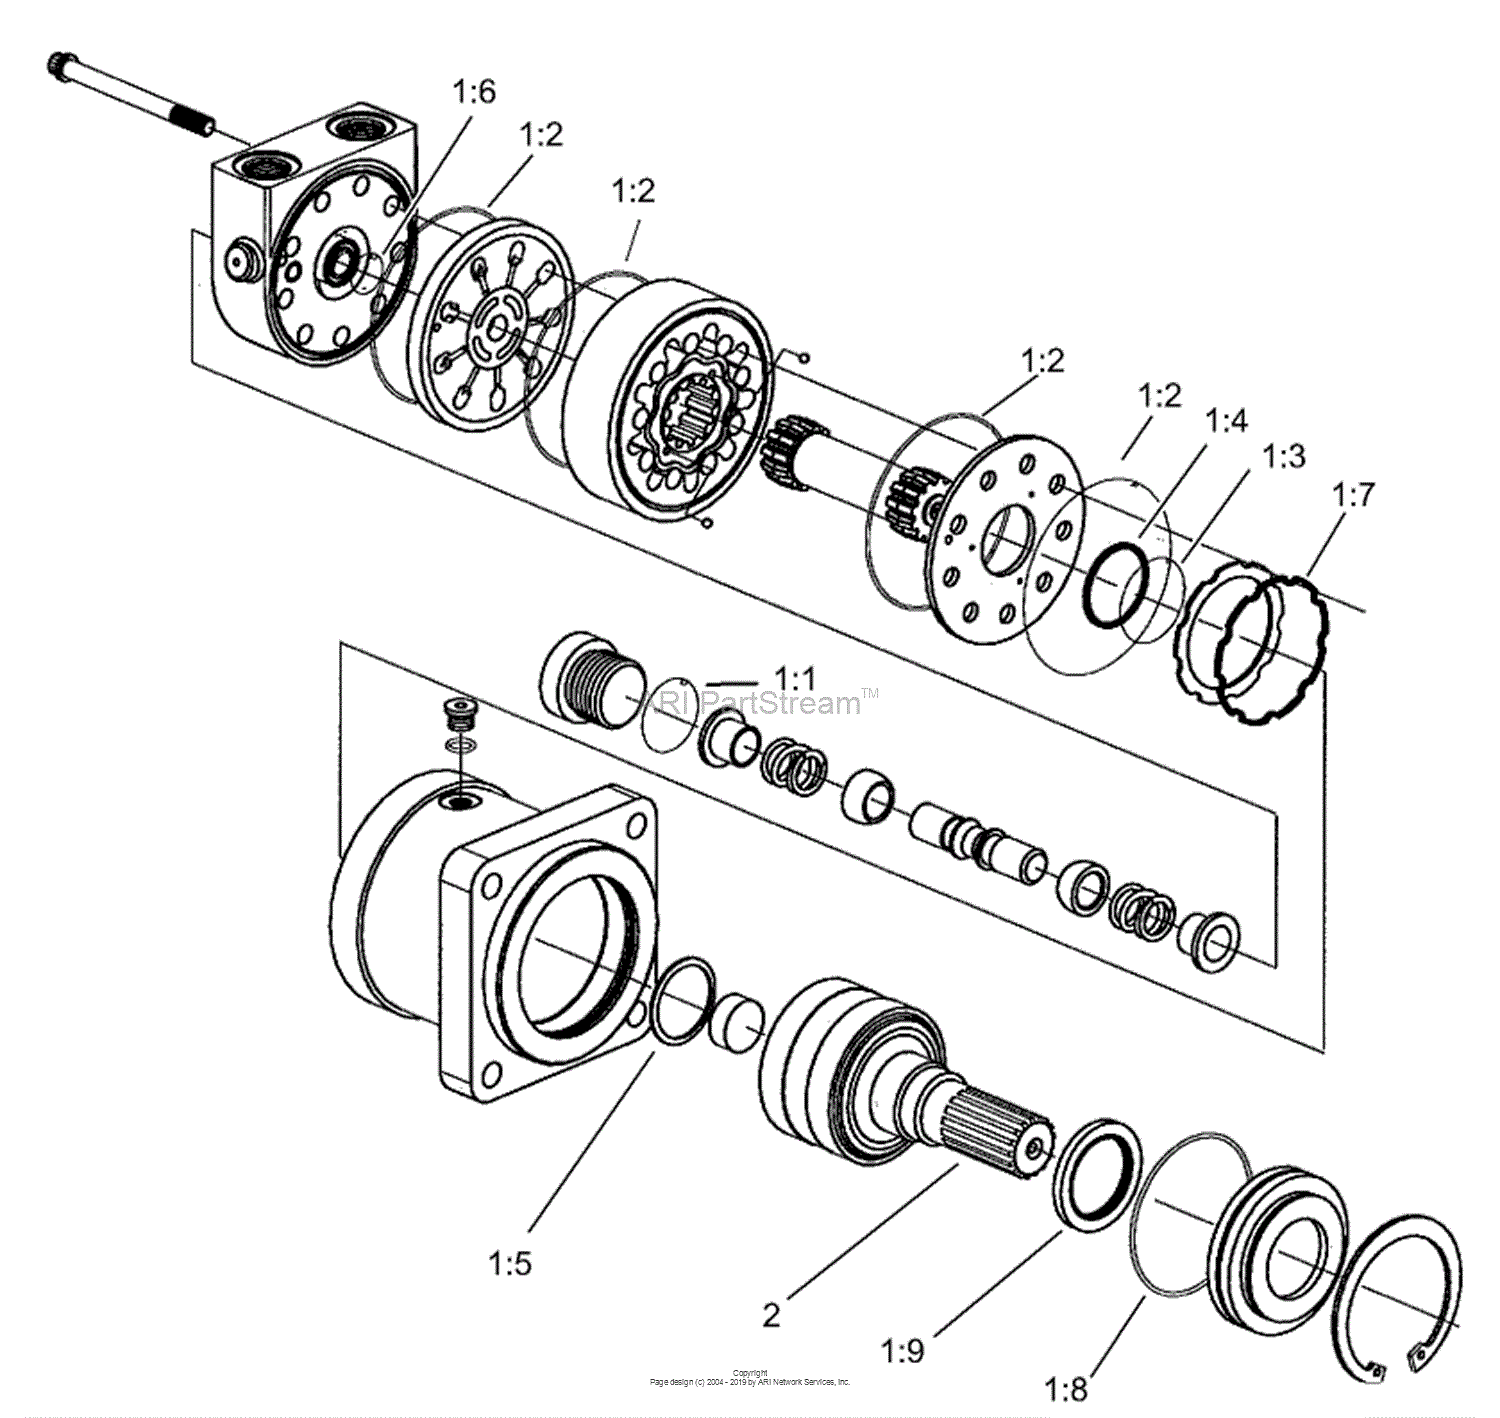 1946 trojan loader parts diagram